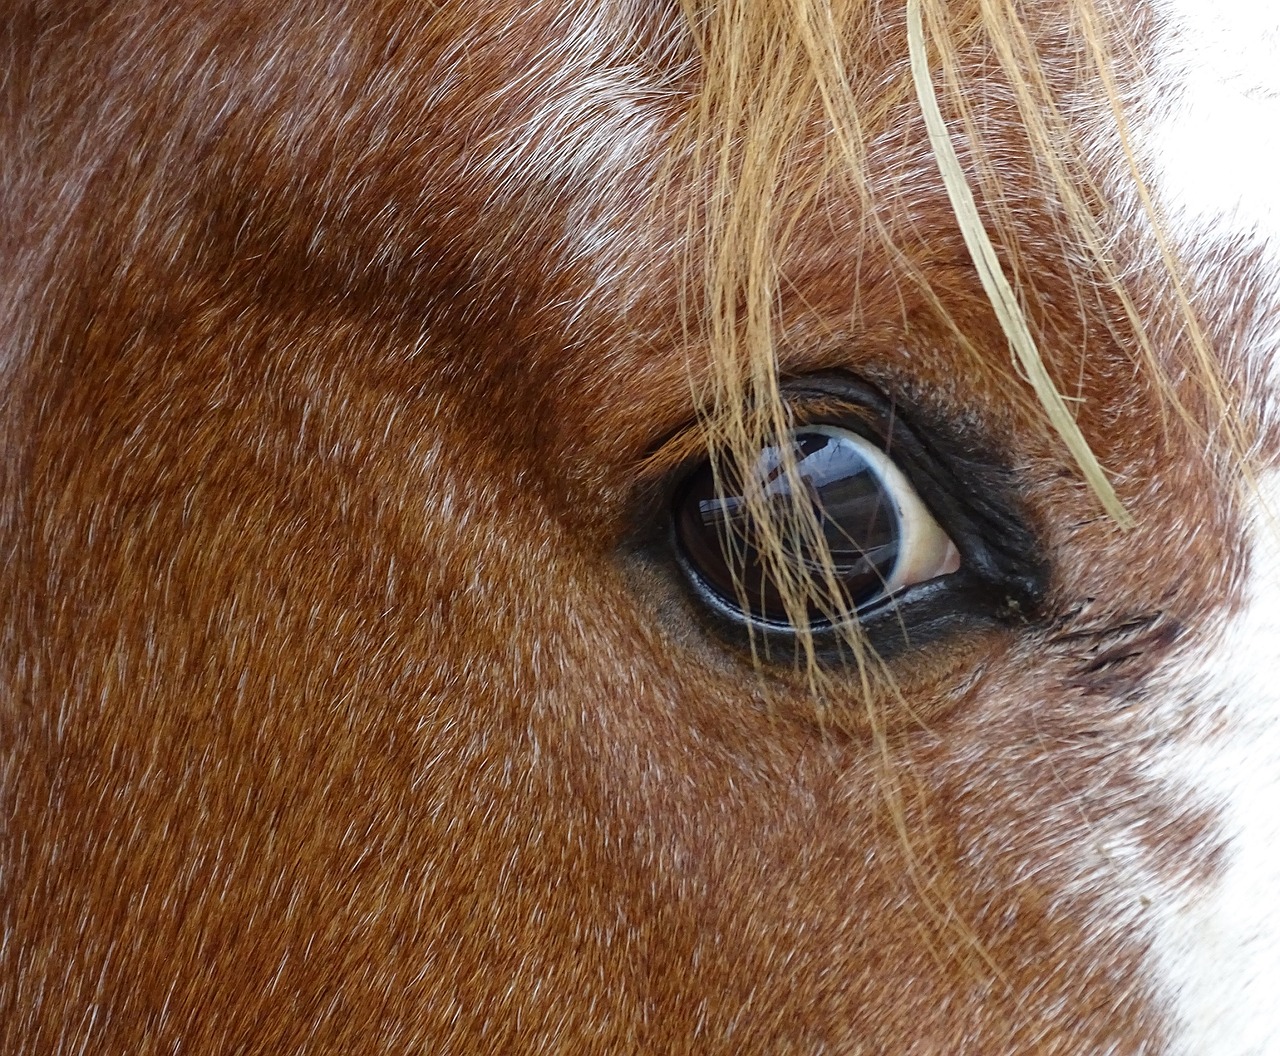 horse eye mane free photo